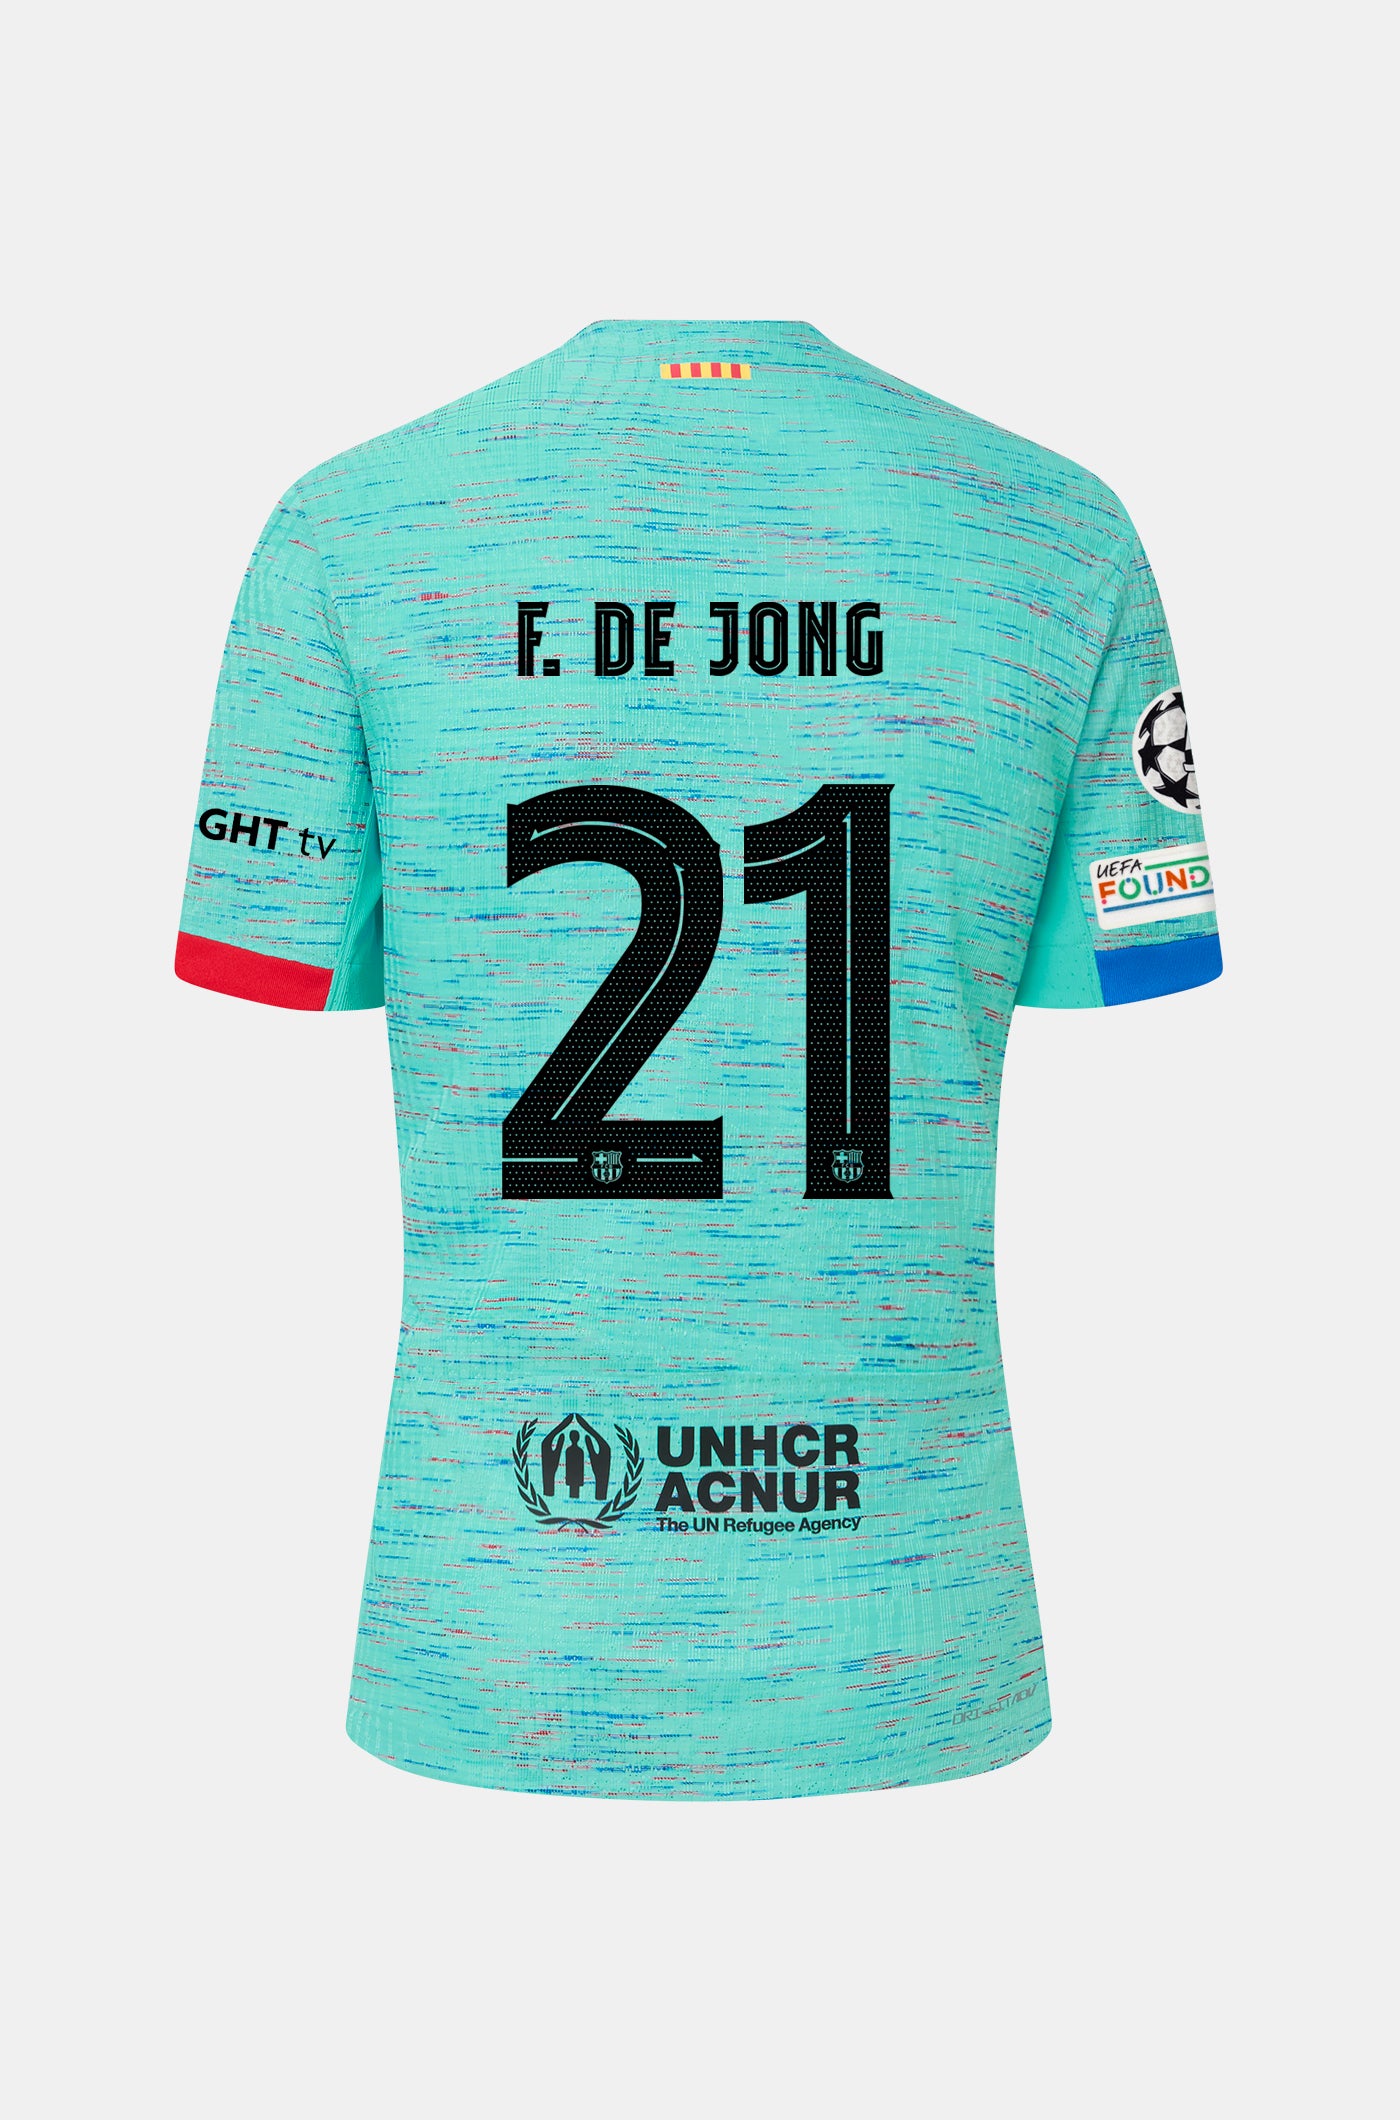 UCL FC Barcelona third shirt 23/24 Player’s Edition - F. DE JONG